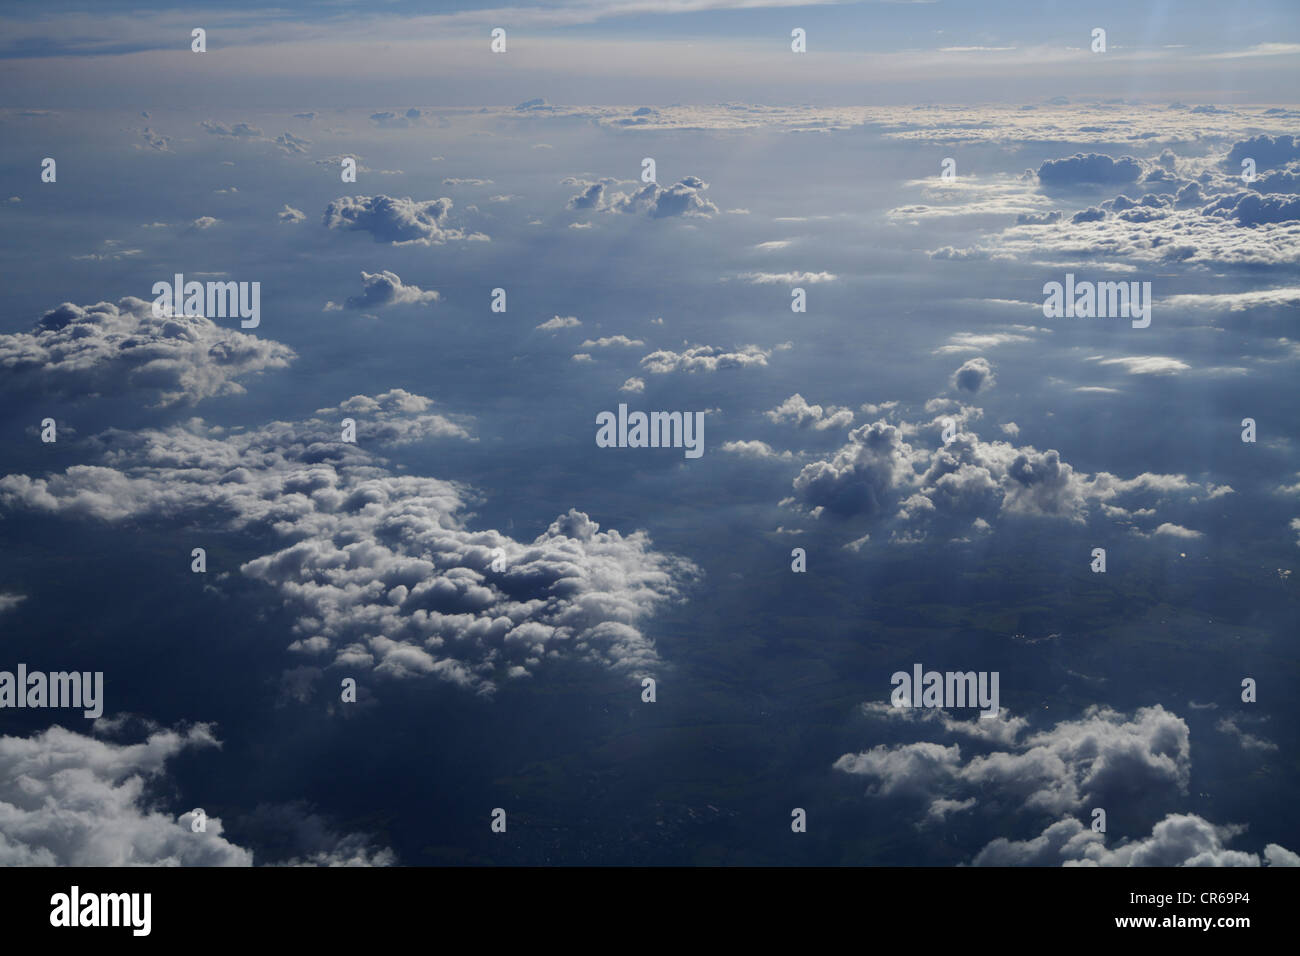 Alemania, Vista de cielo nublado Foto de stock